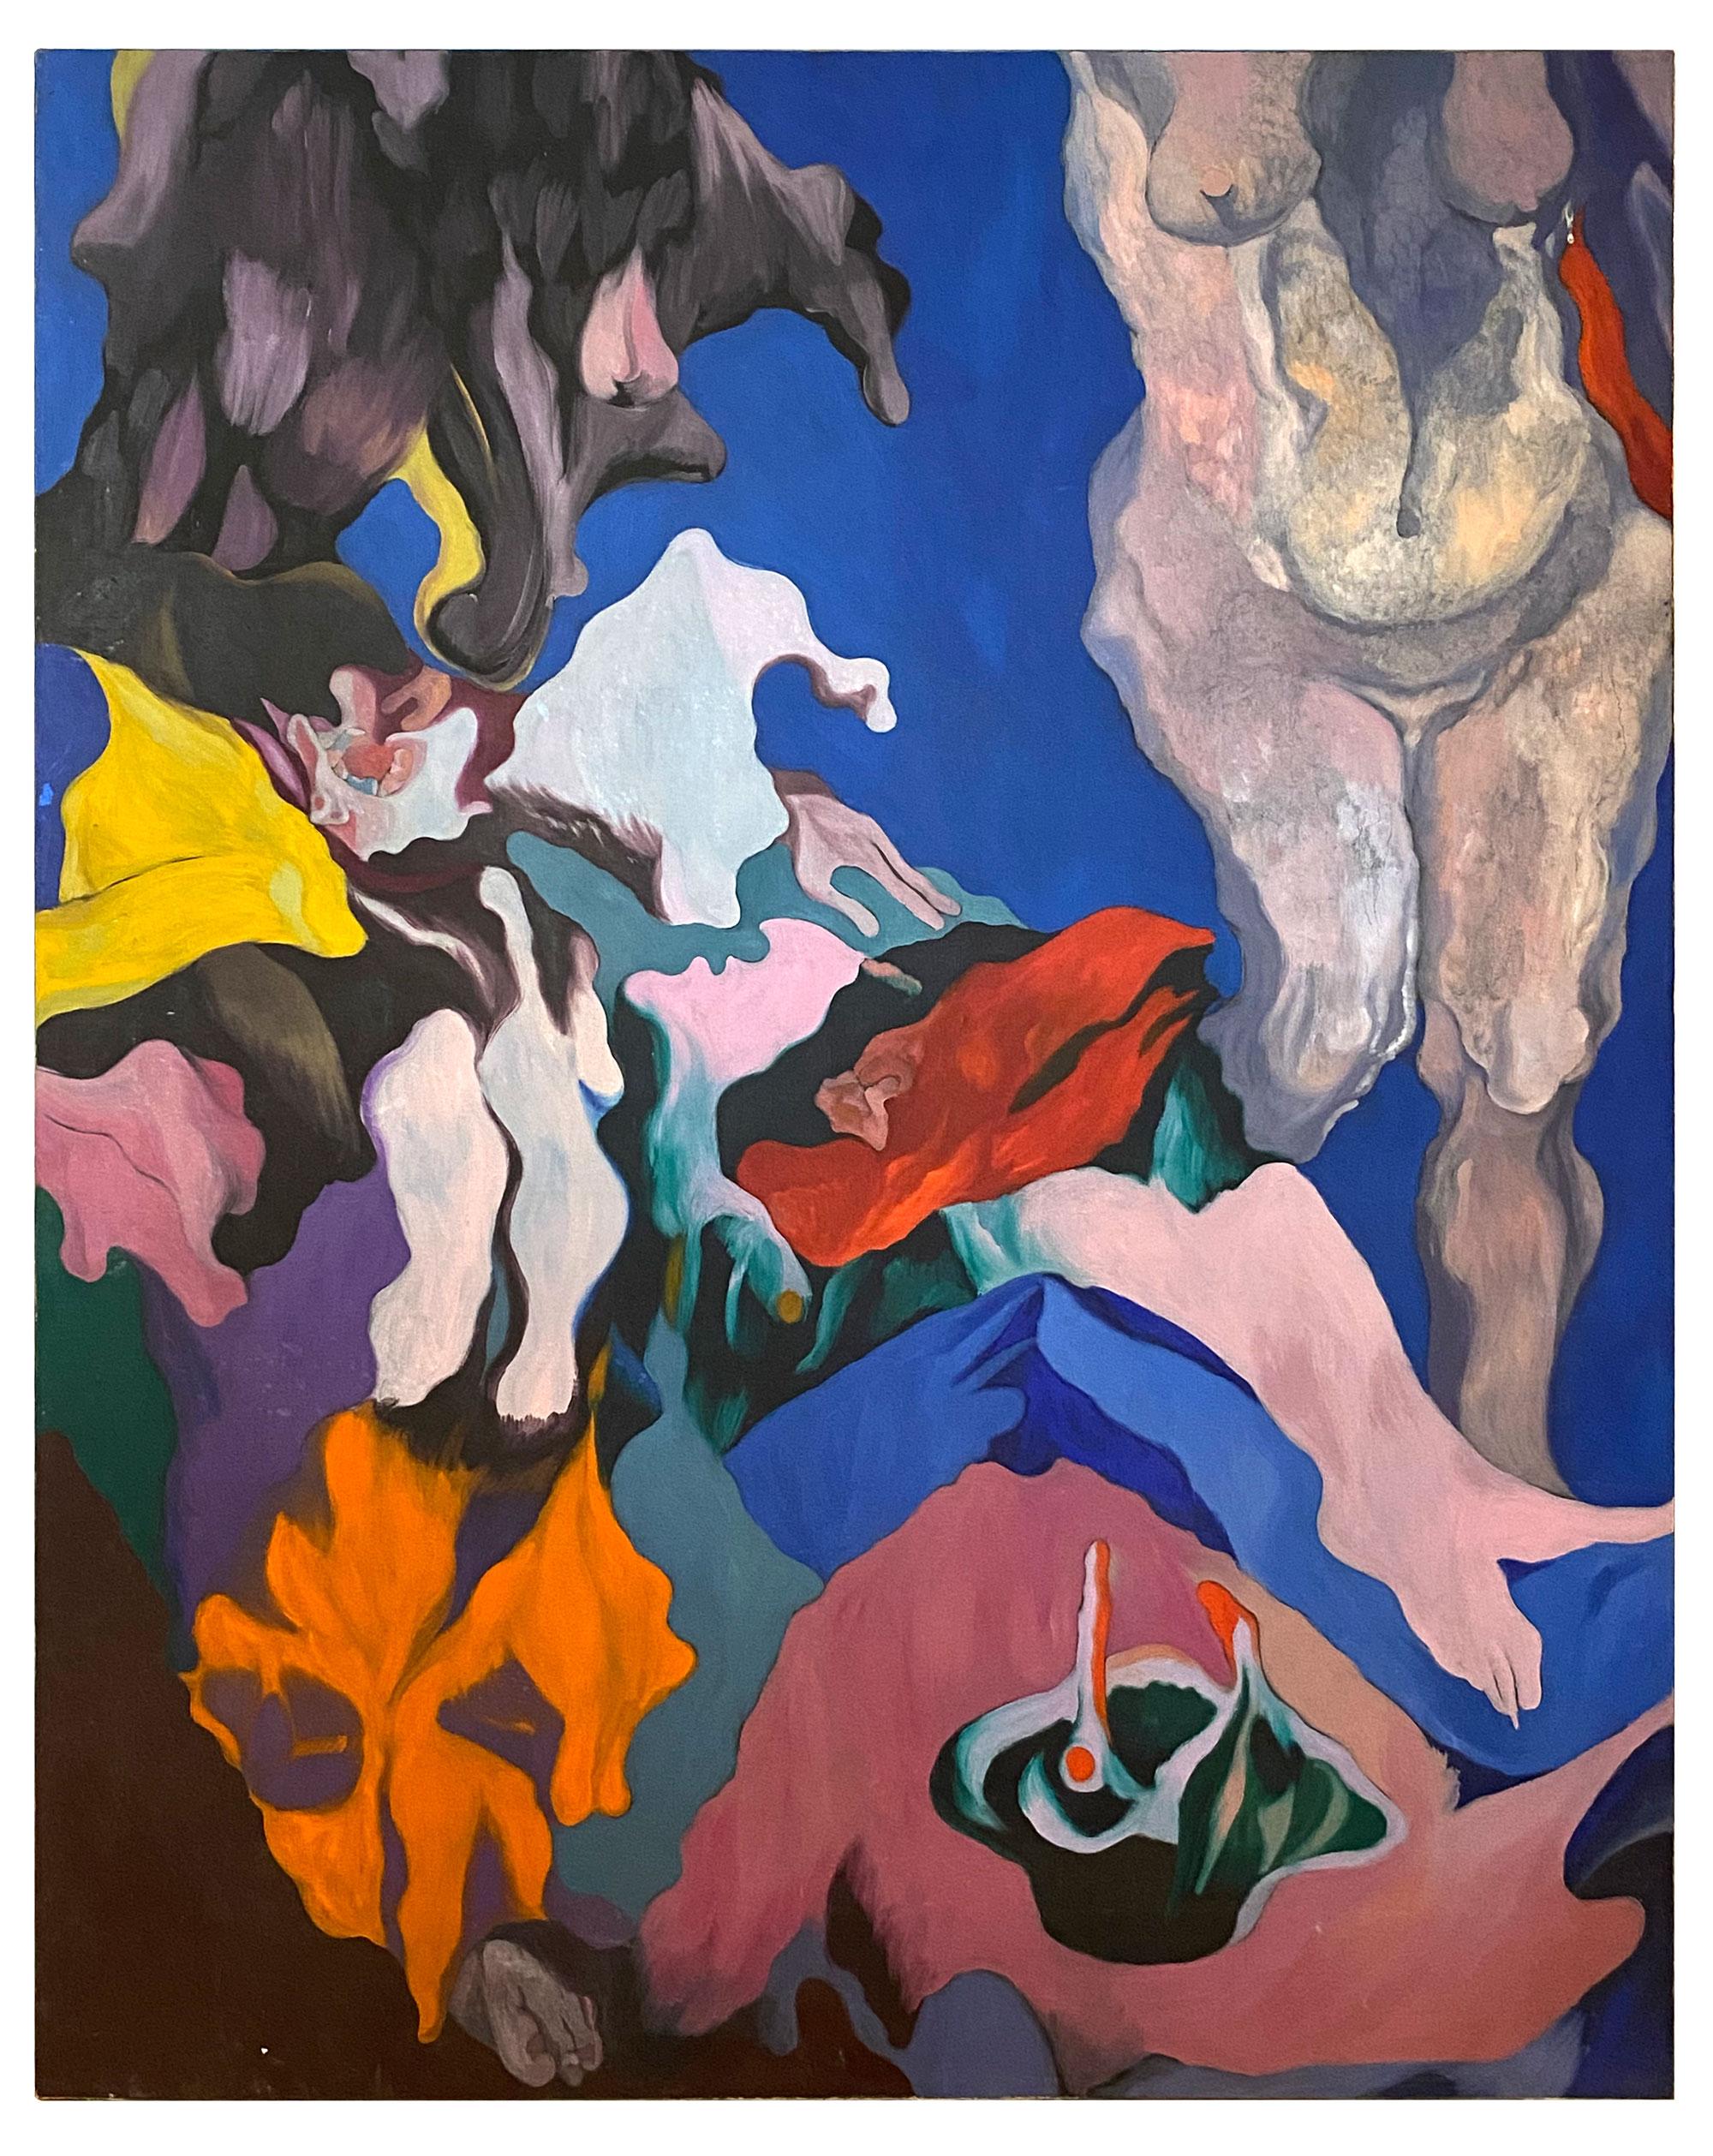 "Atemberaubendes surrealistisches Gemälde des Künstlers Nicholas Orsini aus der Mitte des 20. Jahrhunderts. Sowohl figürlich als auch botanisch in einer Reihe von tiefen, gesättigten Farbtönen. Öl auf gespannter Leinwand. Außergewöhnliches Stück.